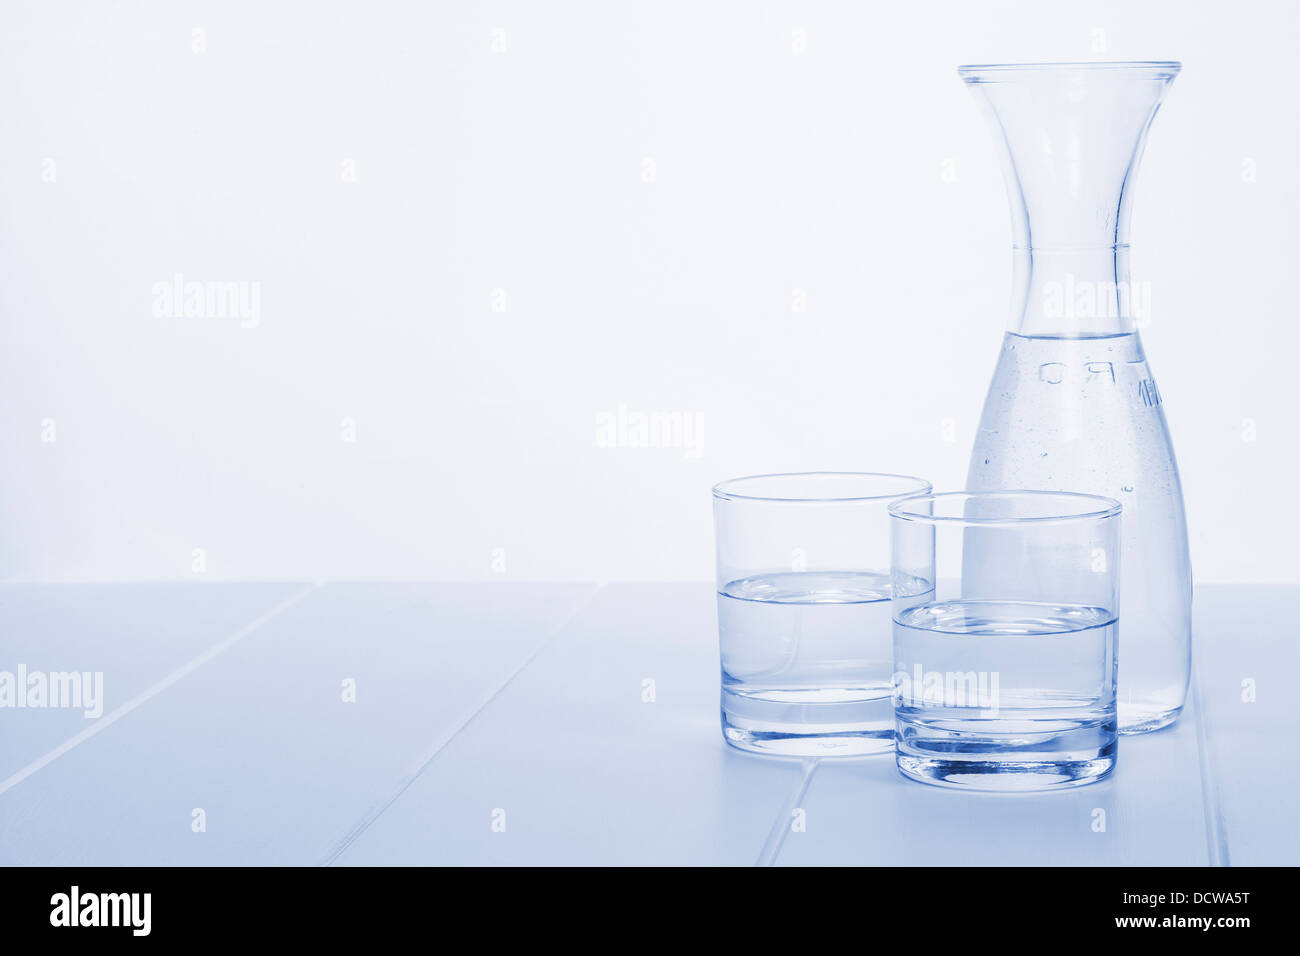 Carafe à eau et 2 verres - une carafe d'eau sur une table avec deux verres, dans les tons bleu, à l'horizontale. Banque D'Images